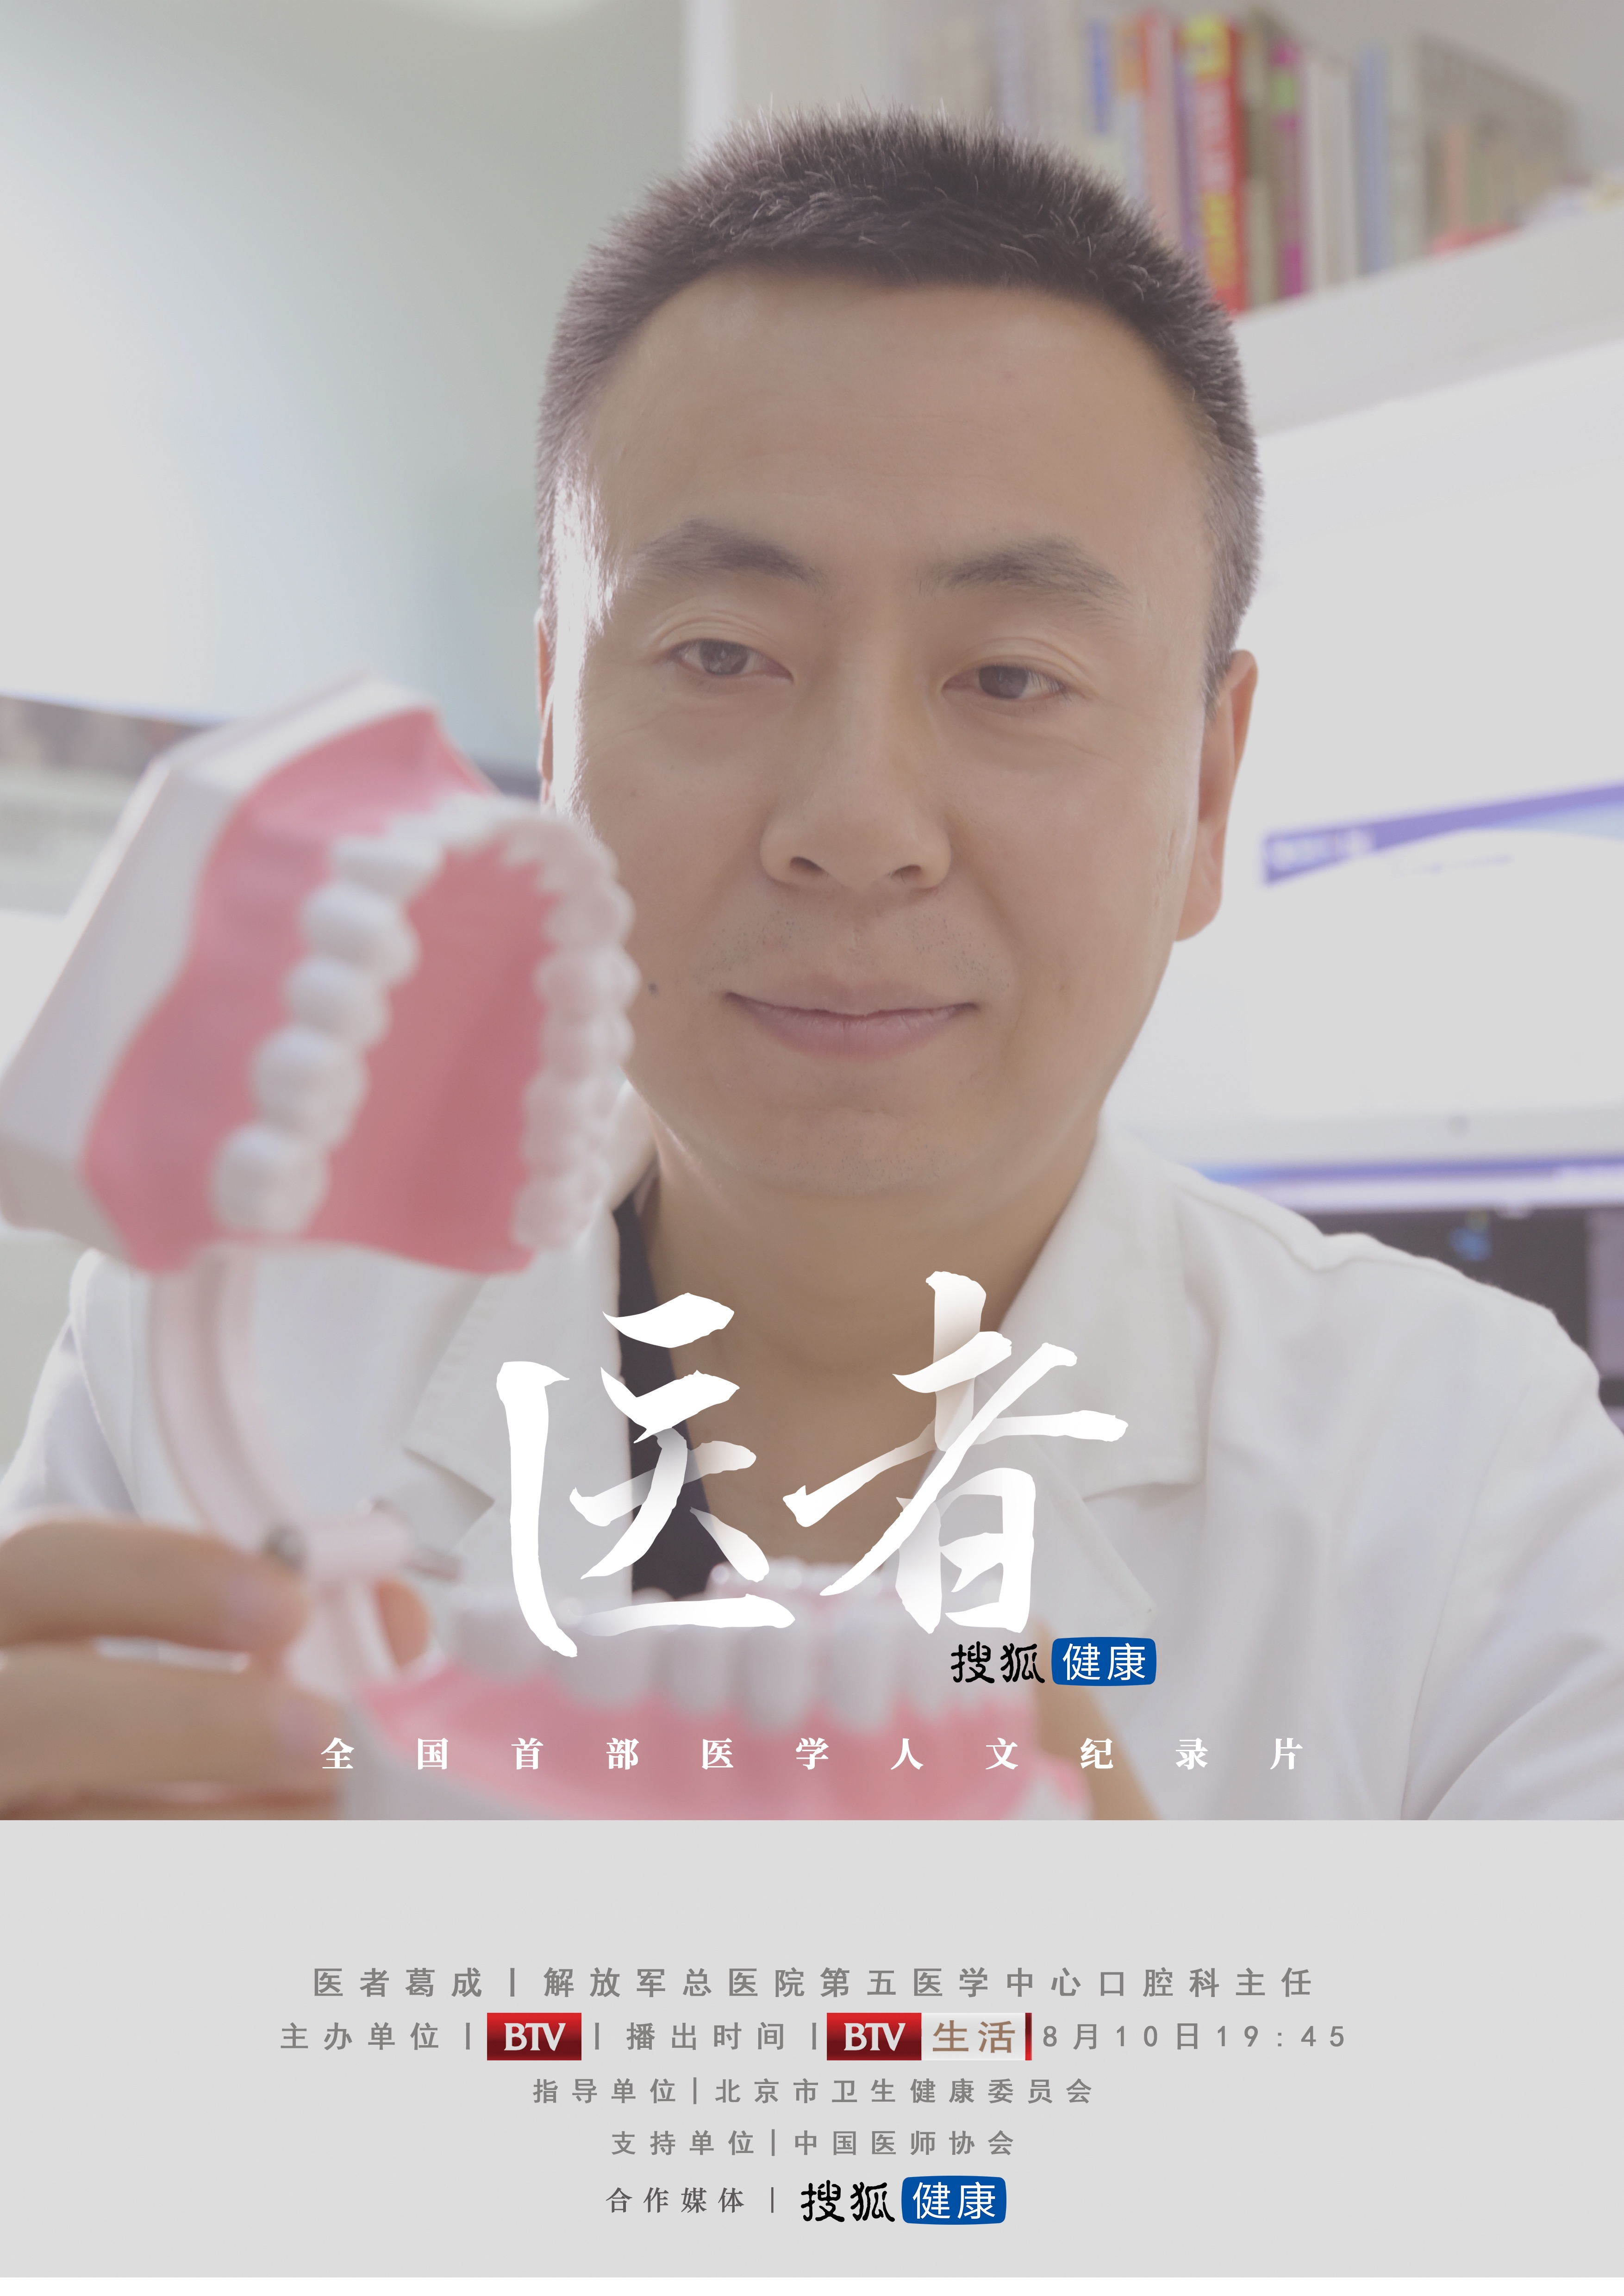 搜狐名医 | 医者葛成:看牙,对老人来说不是一件小事